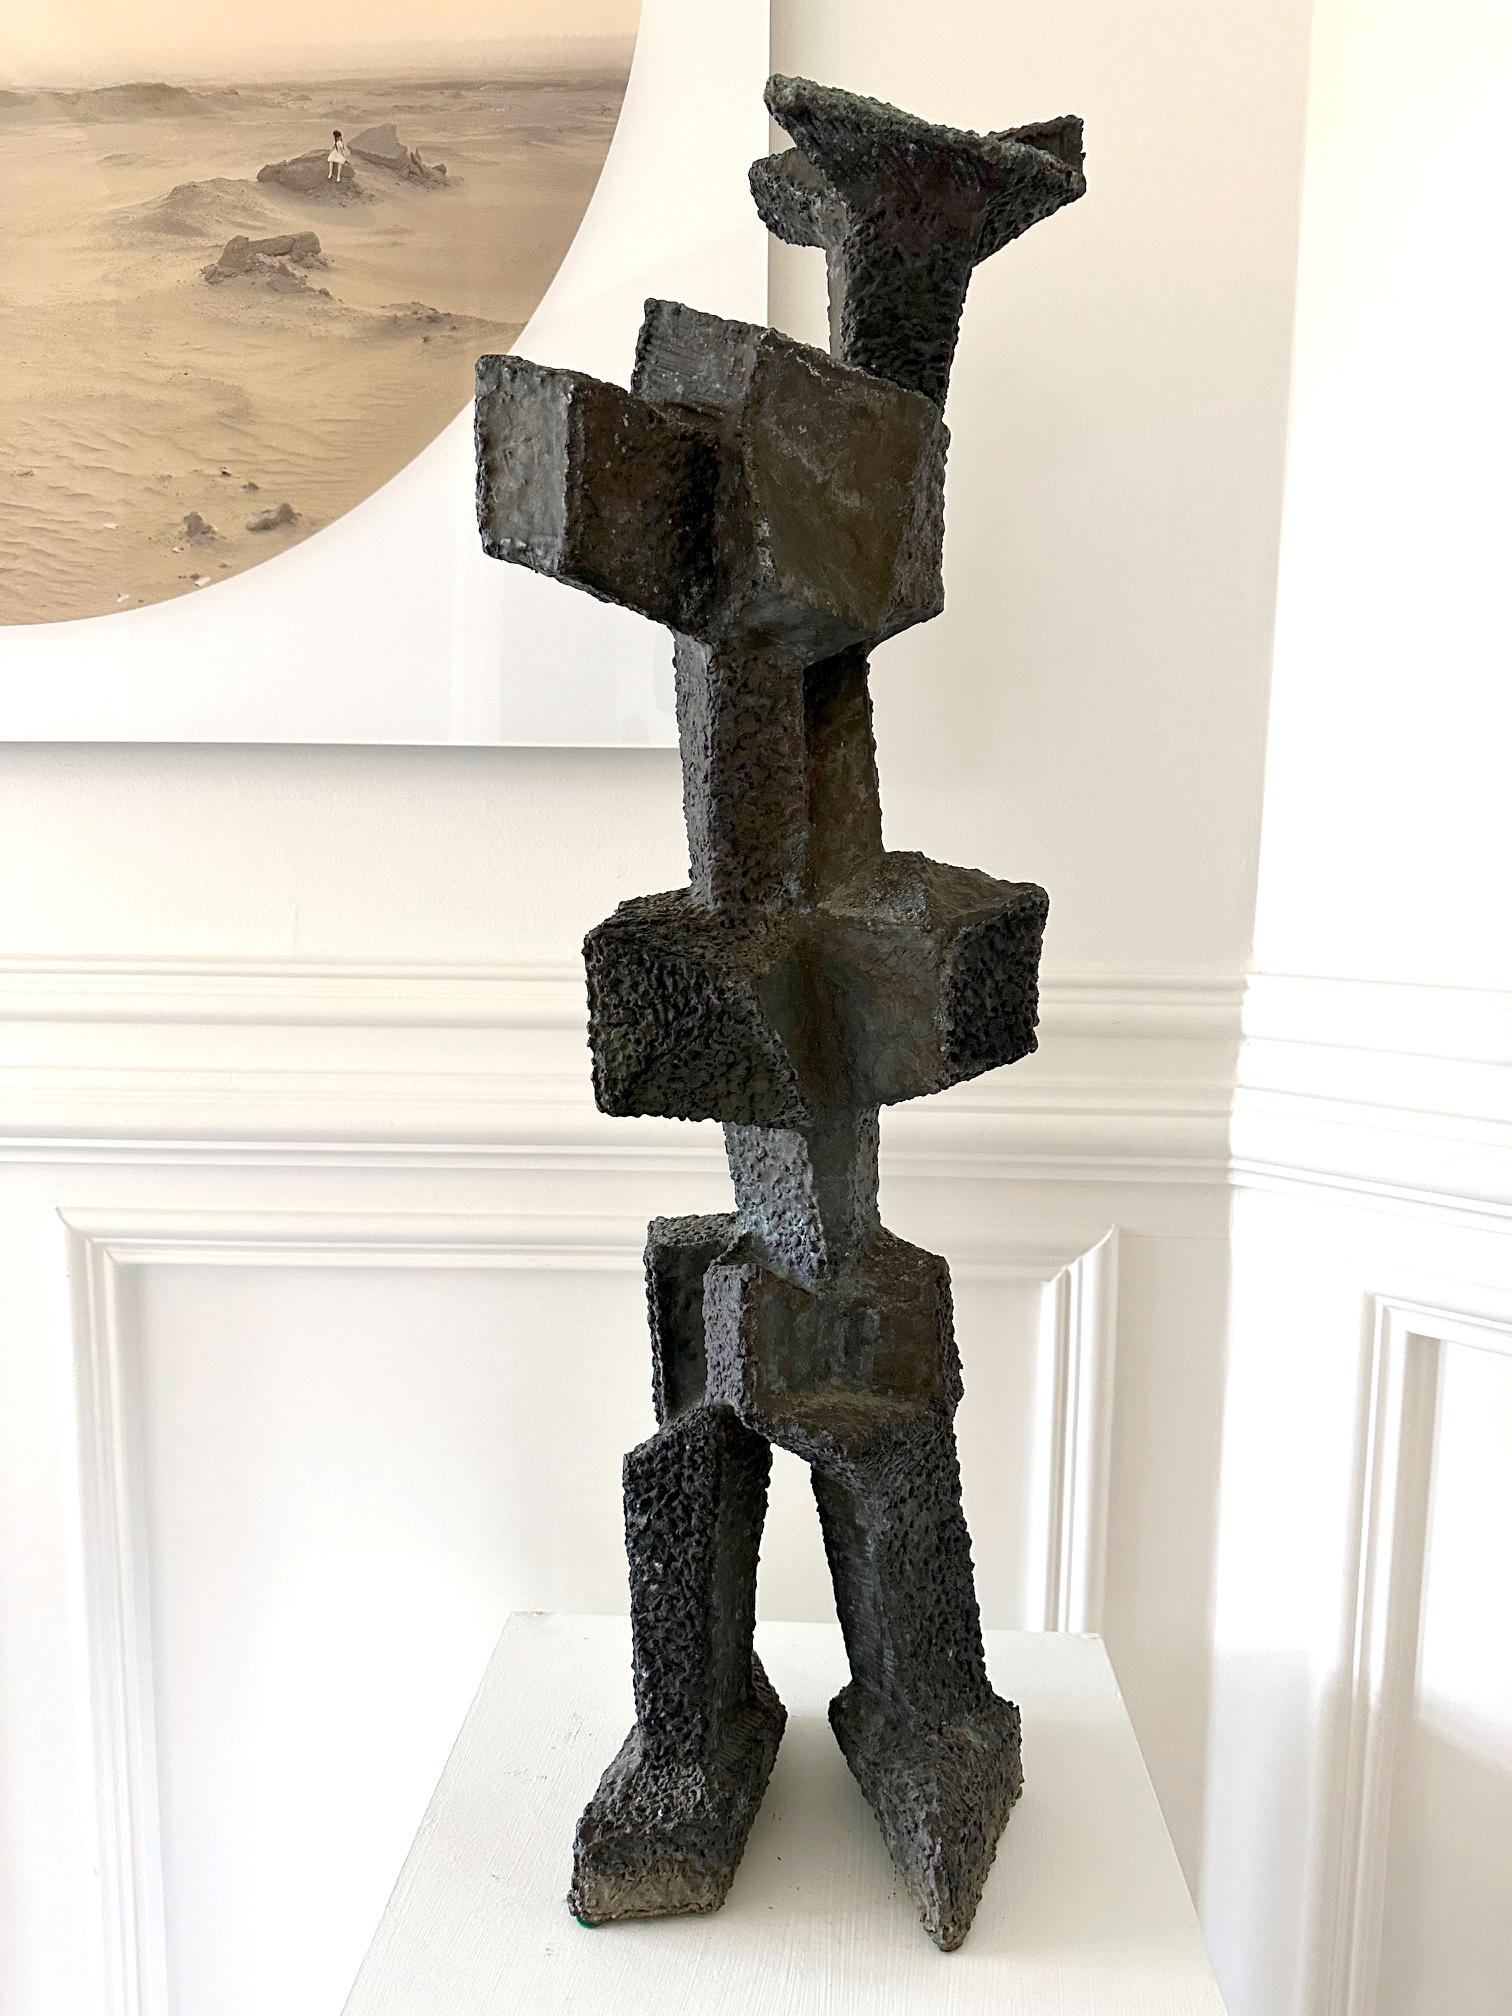 Eine einzigartige Bronzeskulptur aus den 1960er Jahren von Harry Bertoia (1915-1978), dem berühmten, in Italien geborenen amerikanischen Künstler, Bildhauer und Designer. Die geschweißte und patinierte Bronzeskulptur hat eine abstrakte, figurative